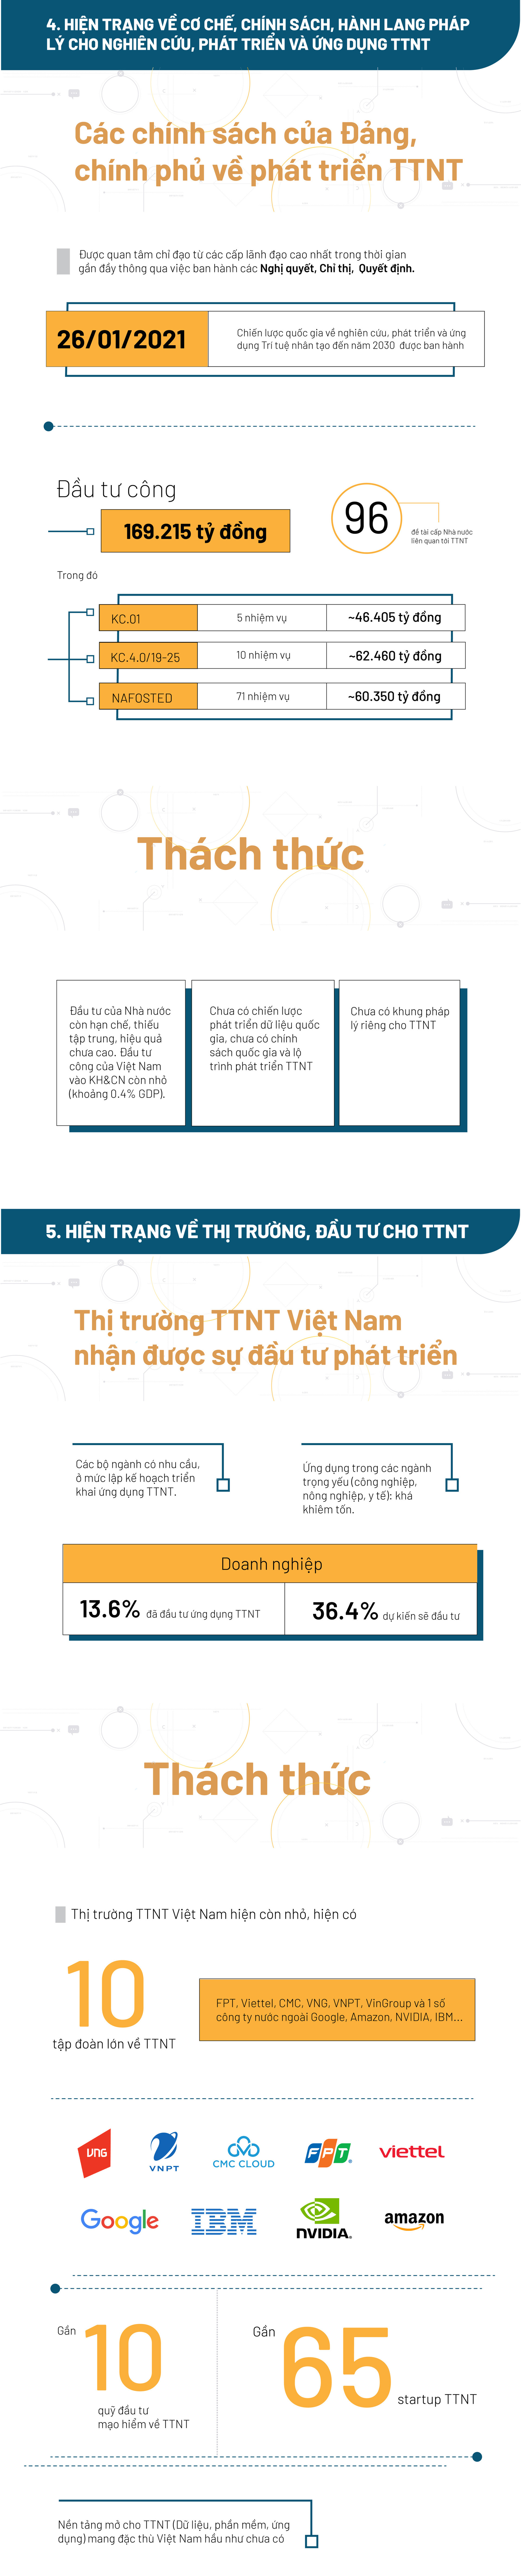 Hiện trạng ứng dụng Trí tuệ nhân tạo ở Việt Nam - Ảnh 4.